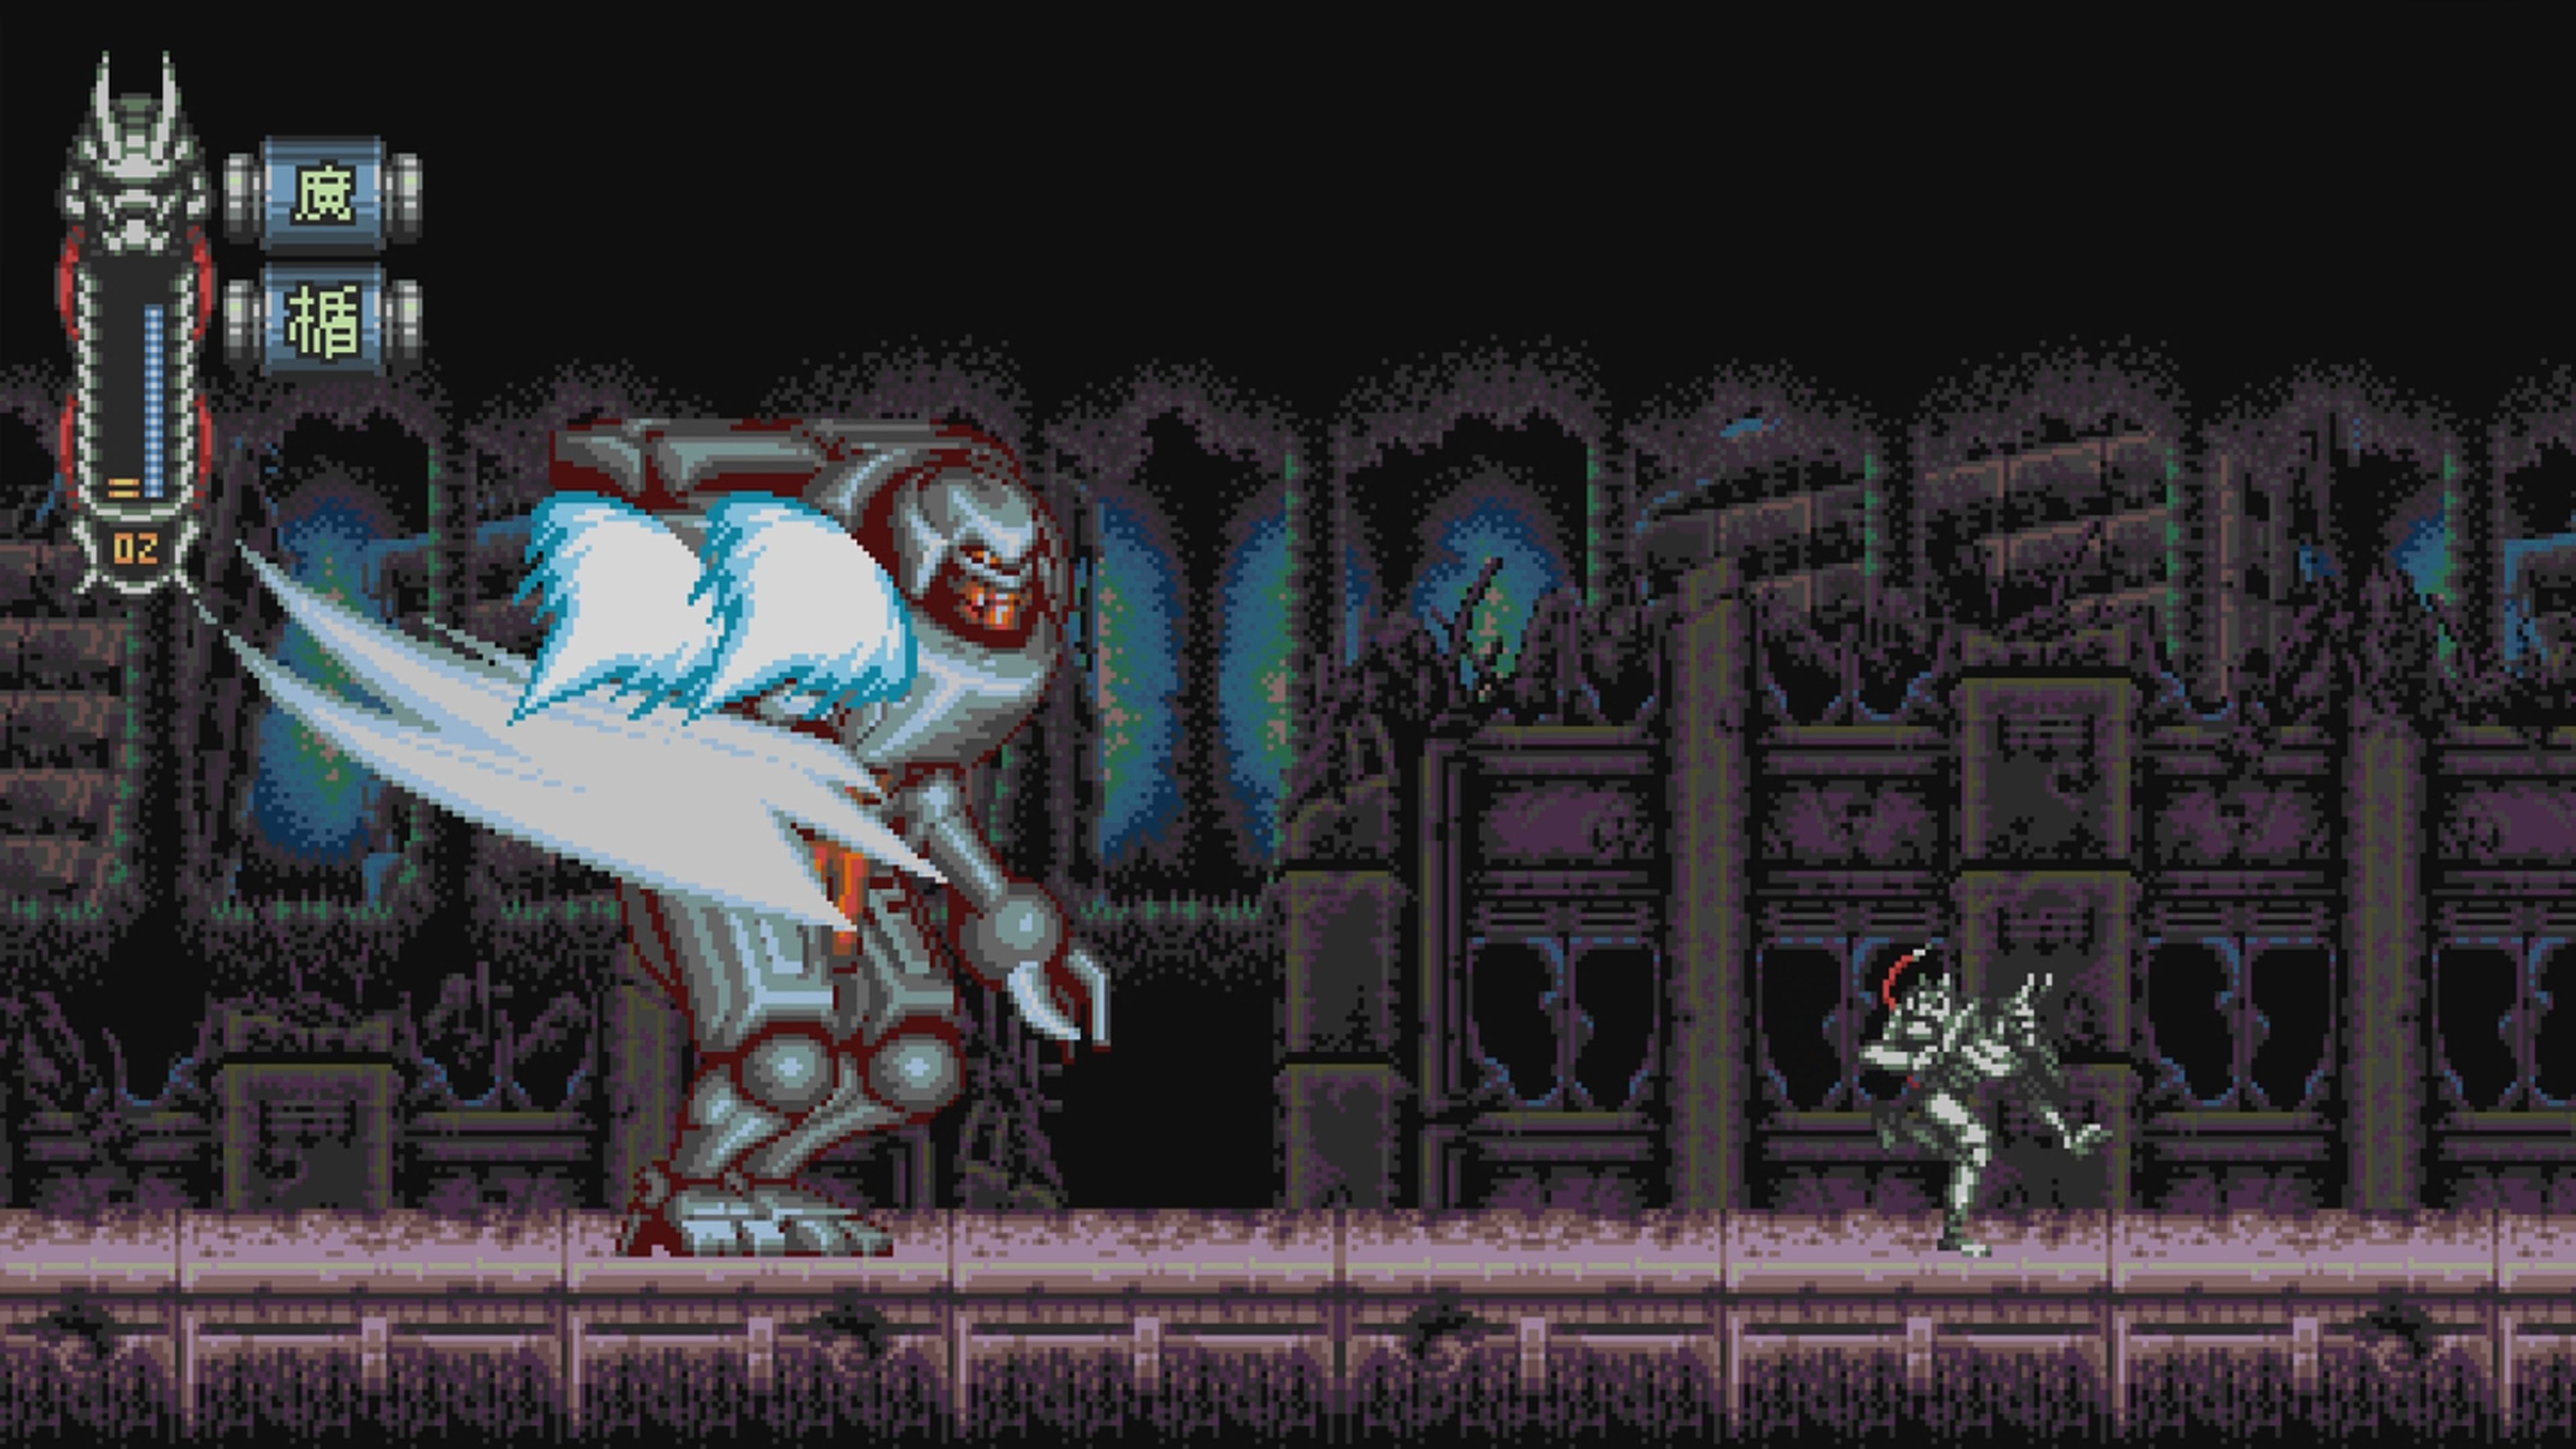 Análisis Vengeful Guardian: Moonrider, venganza ninja de 16 bits